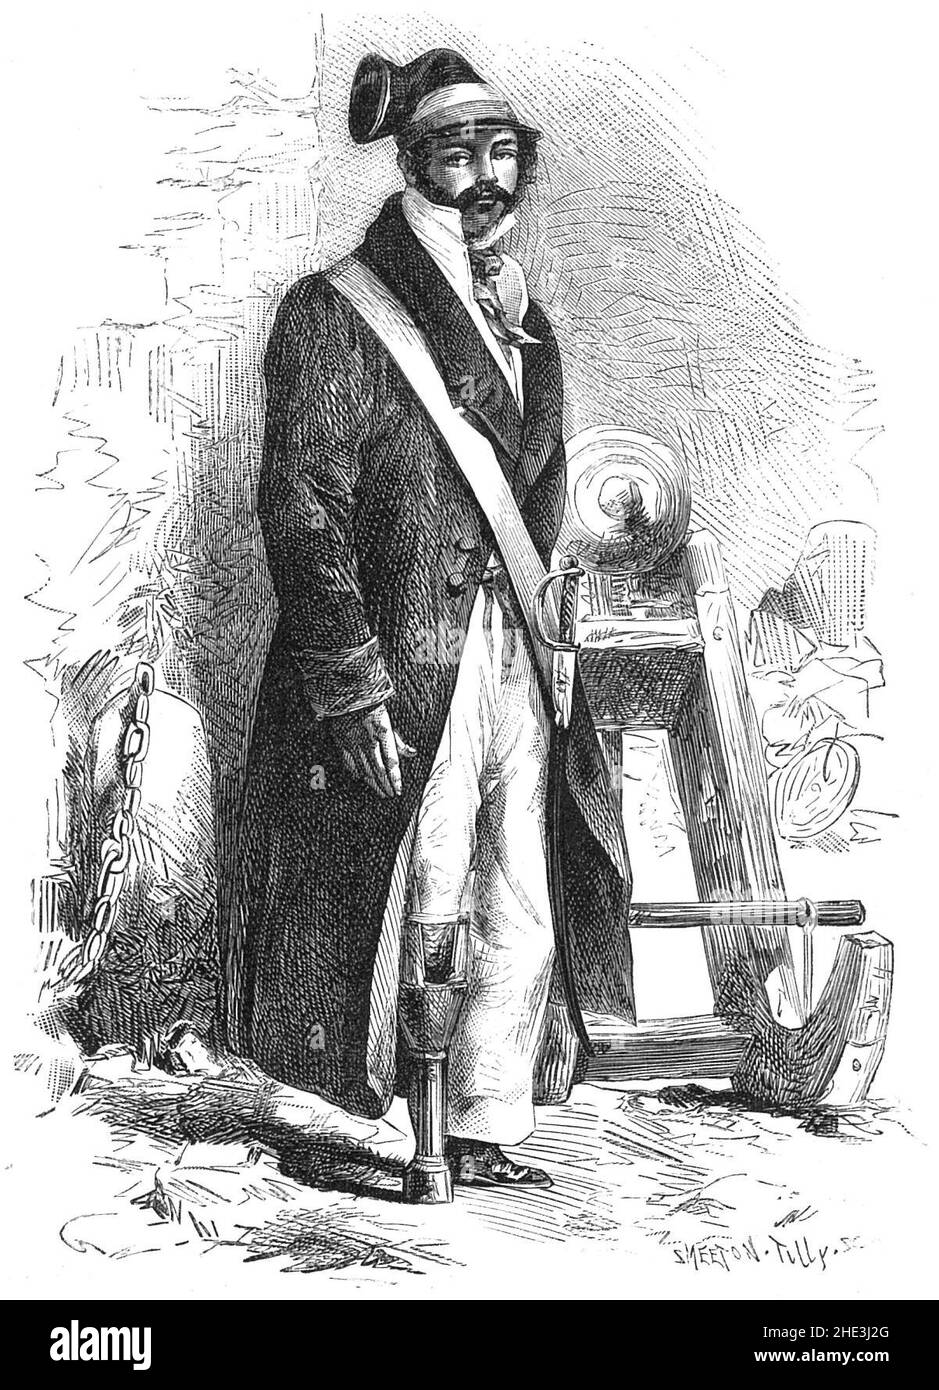 Révolution belge de 1830 - Charlier, Jambe de bois. Stock Photo